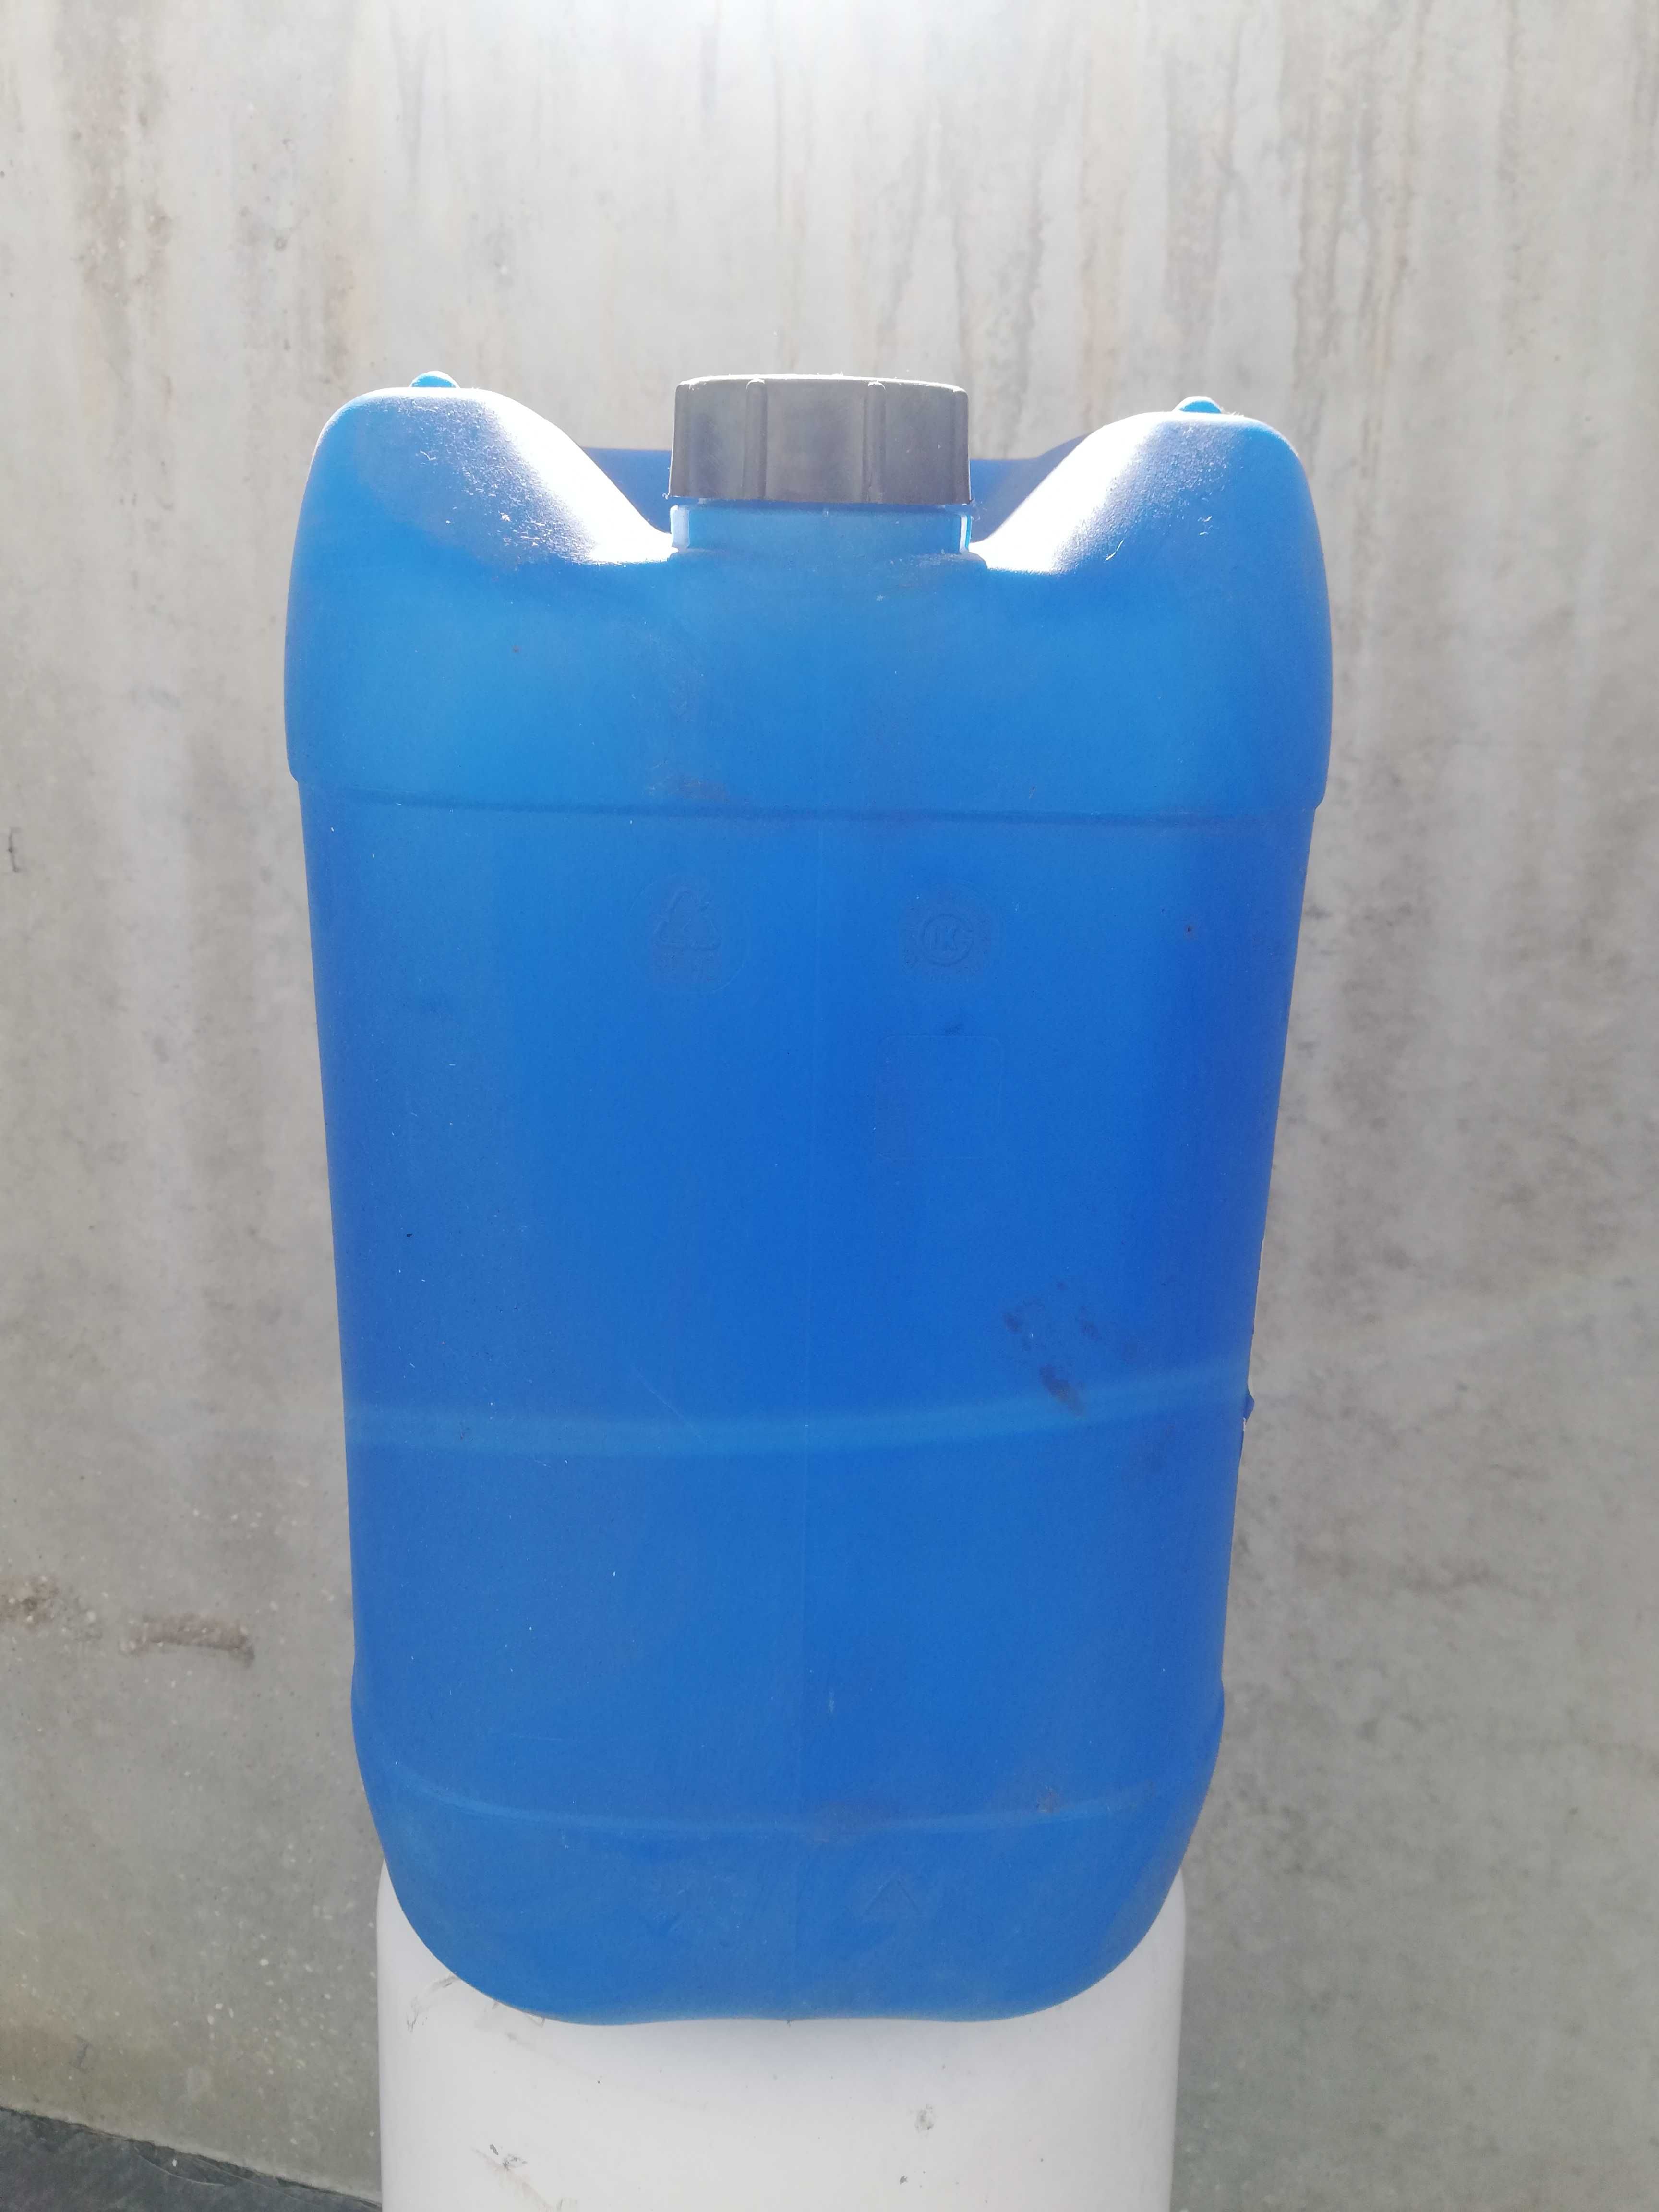 Vendo Jerricans / Bidons de 20 litros (brancos) e 30 litros (azuis)